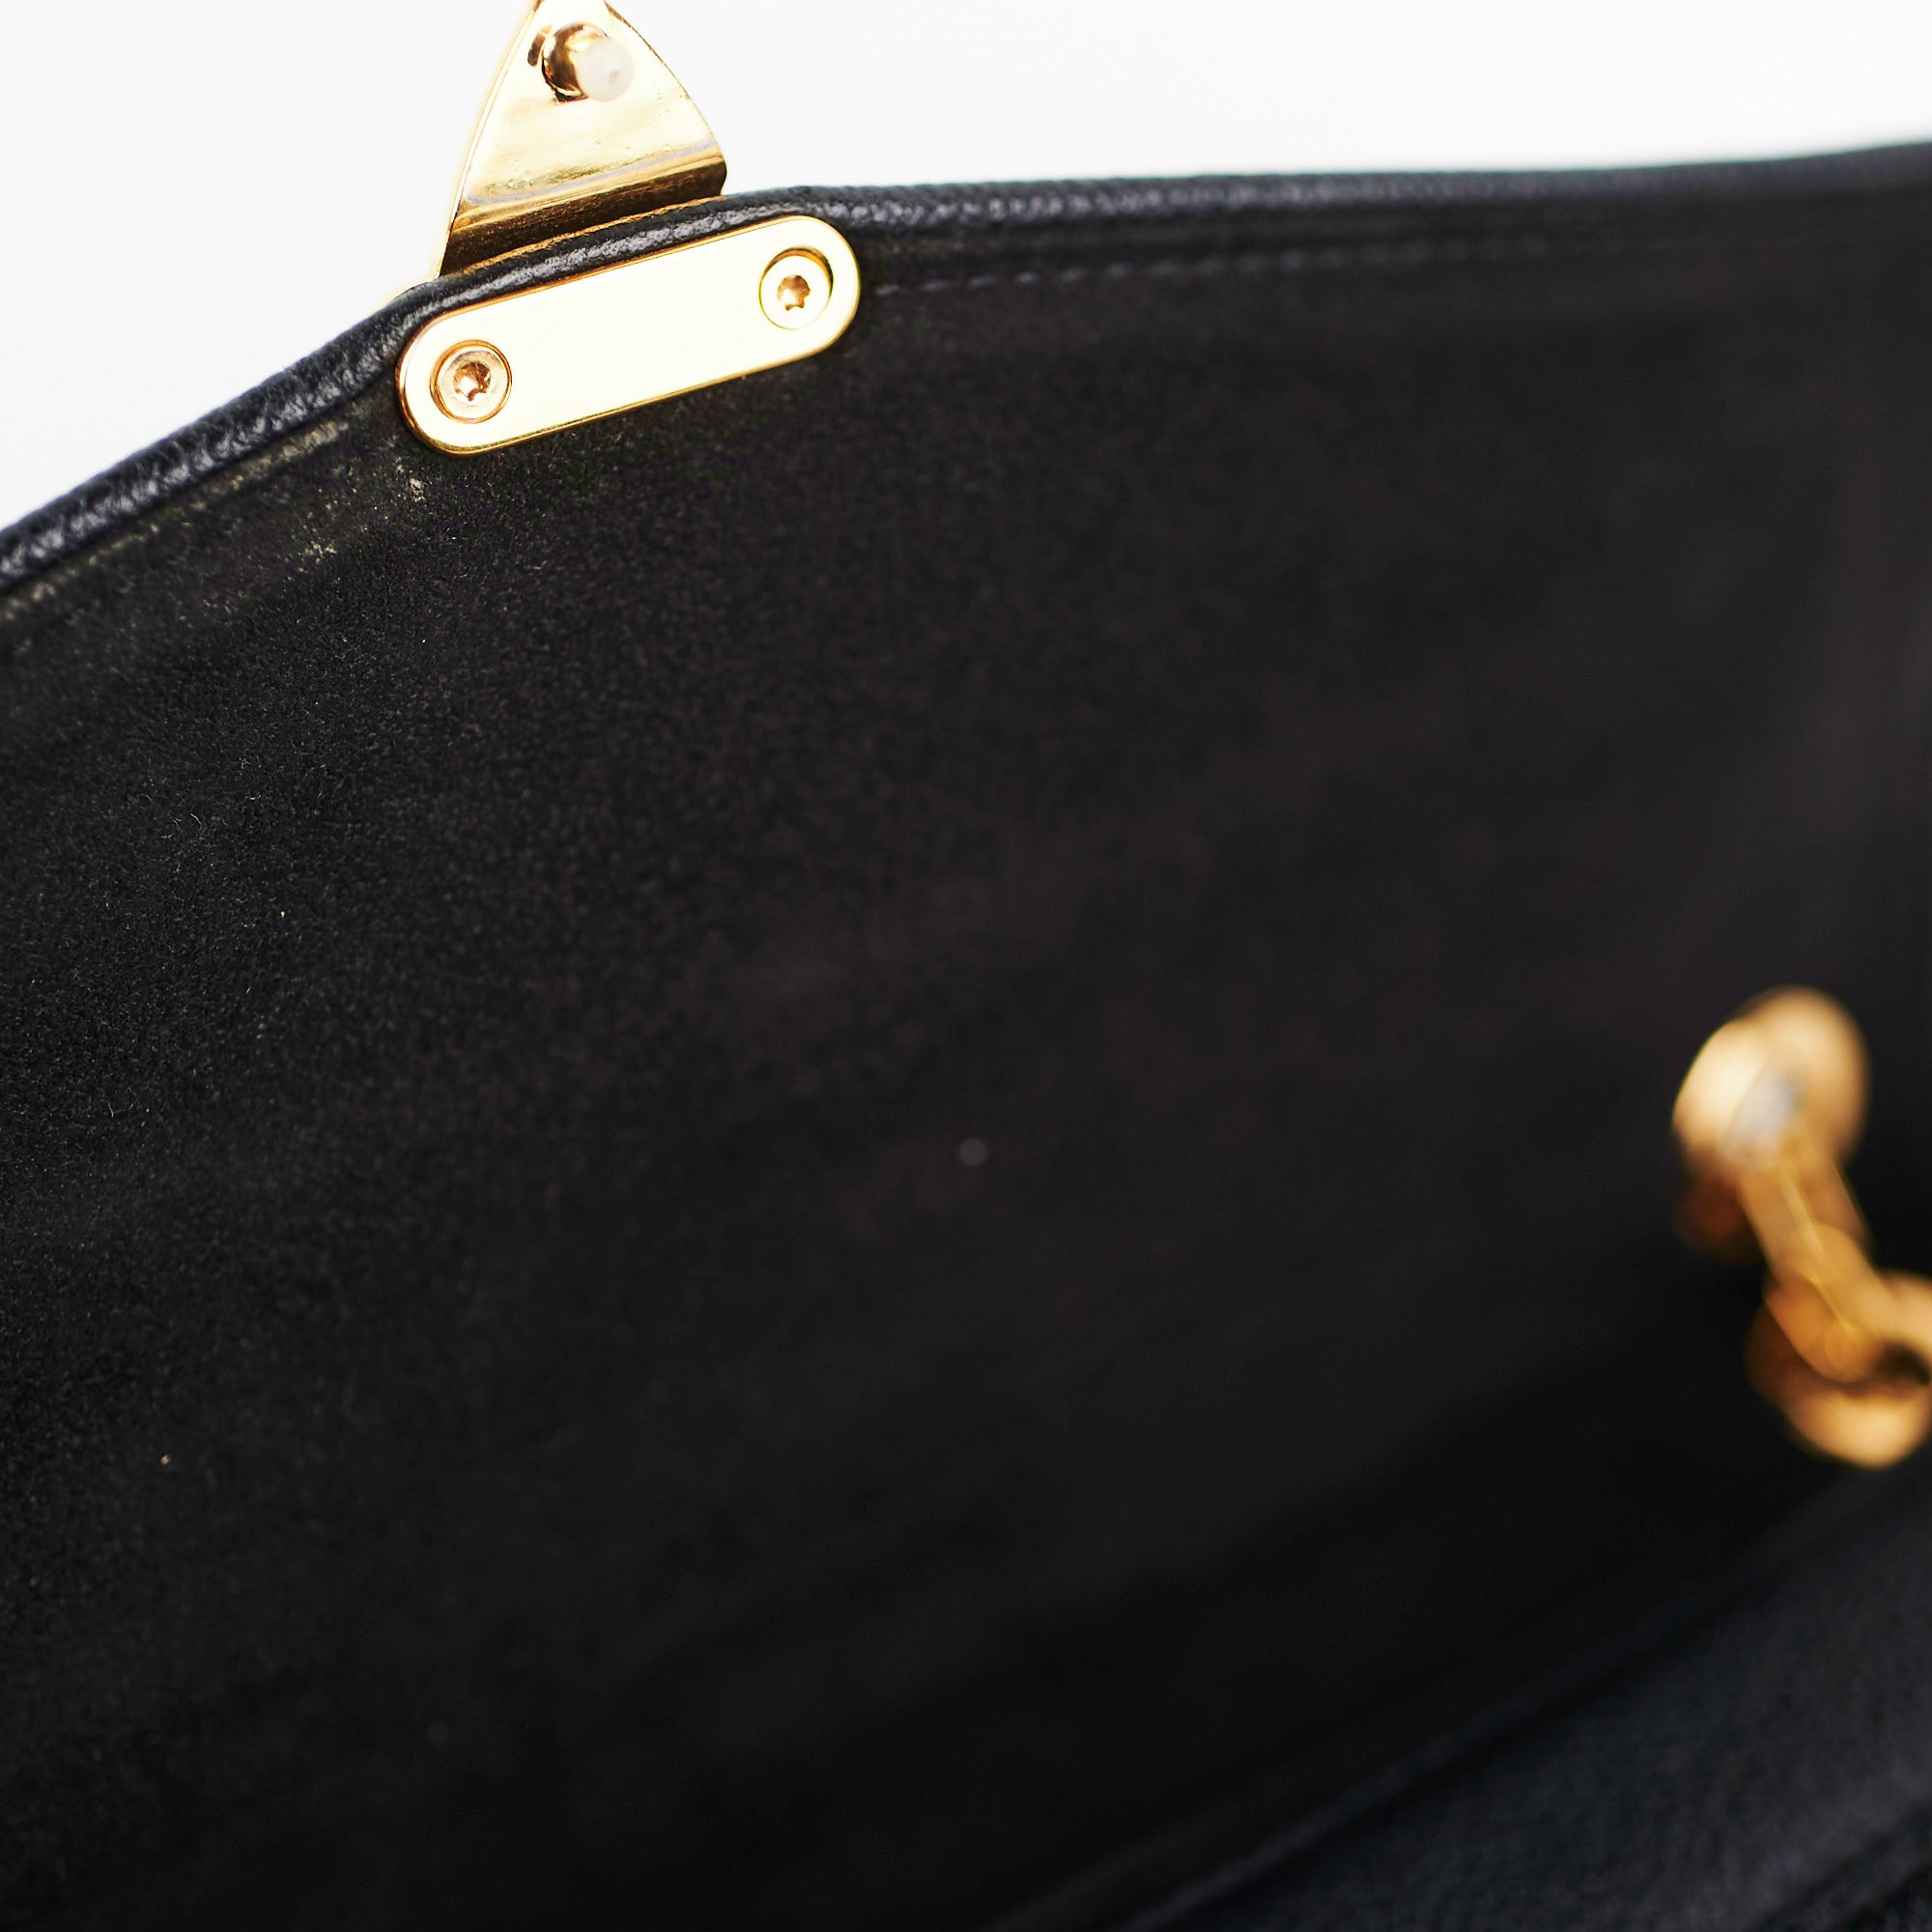 Louis Vuitton St Germain PM Shoulder Bag - THE PURSE AFFAIR